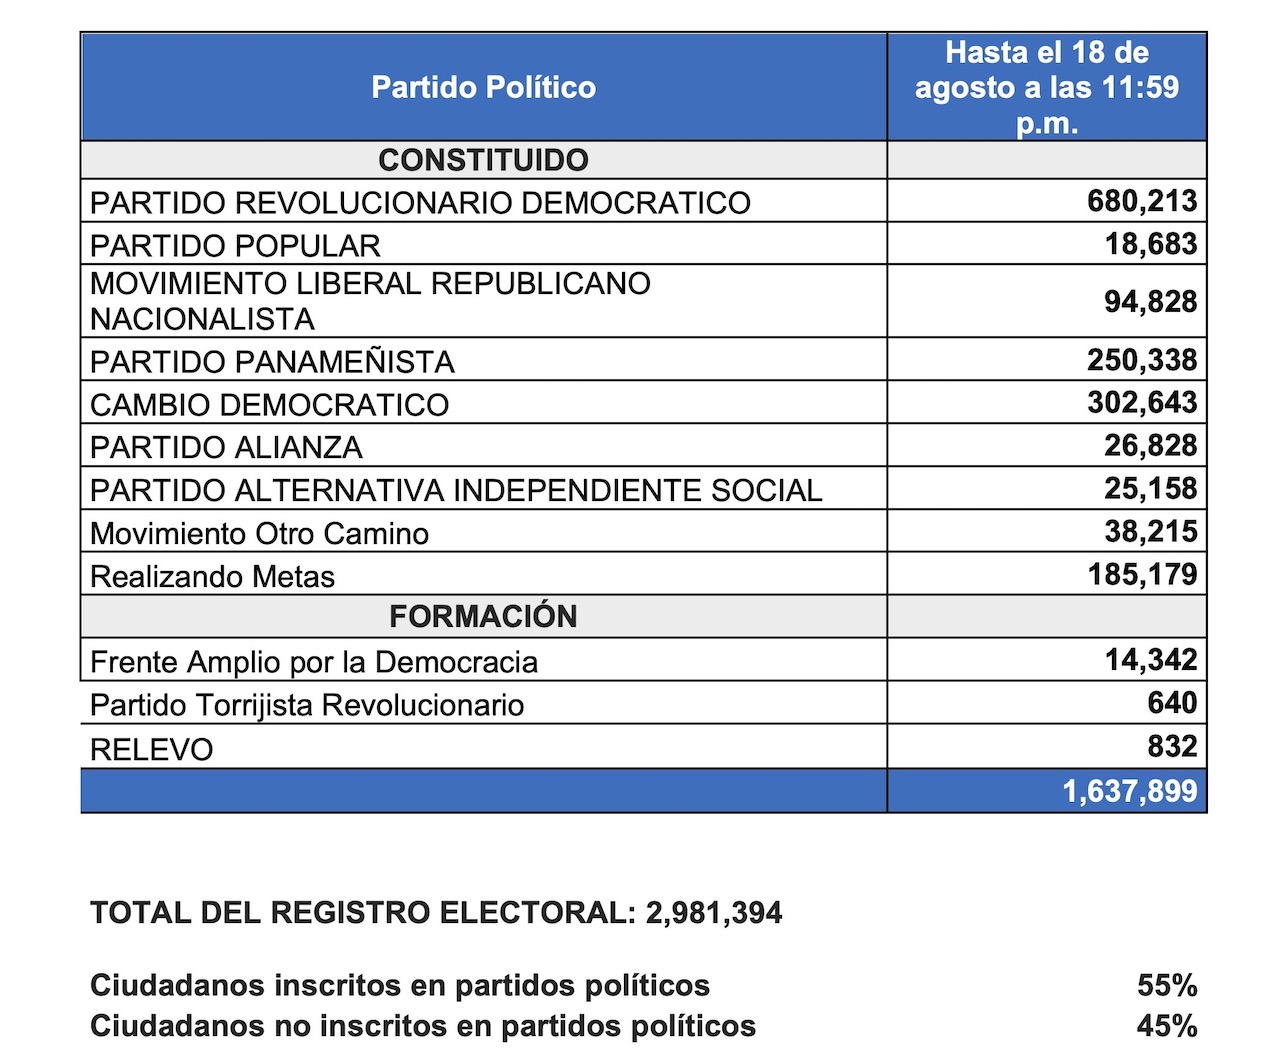 De los 2.9 millones de ciudadanos codificados en Registro Electoral, 55% inscritos en partidos políticos